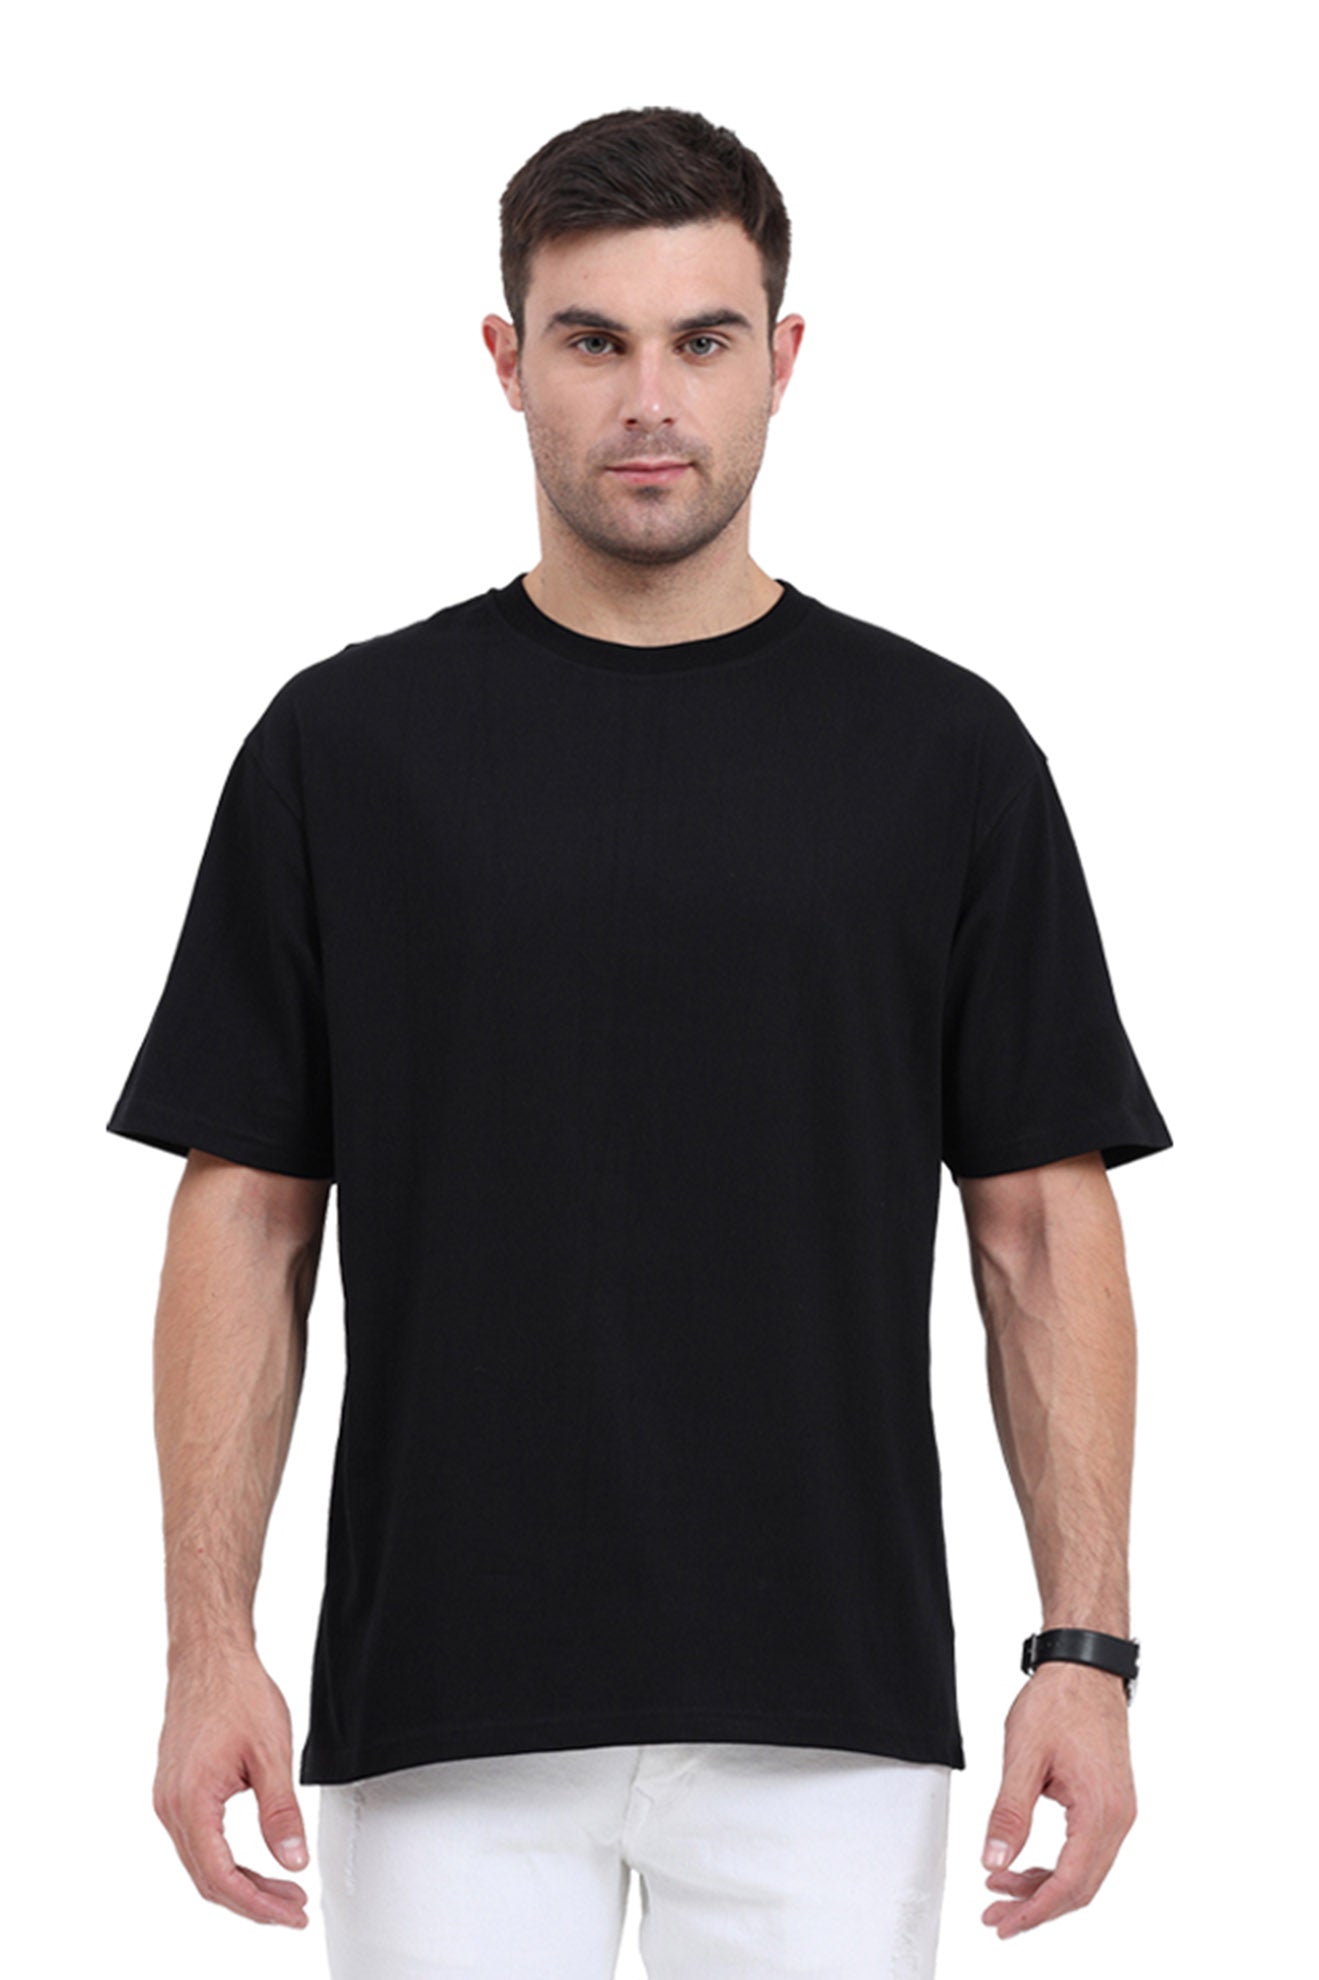 Oversized plain black t shirt for men – Uppstring